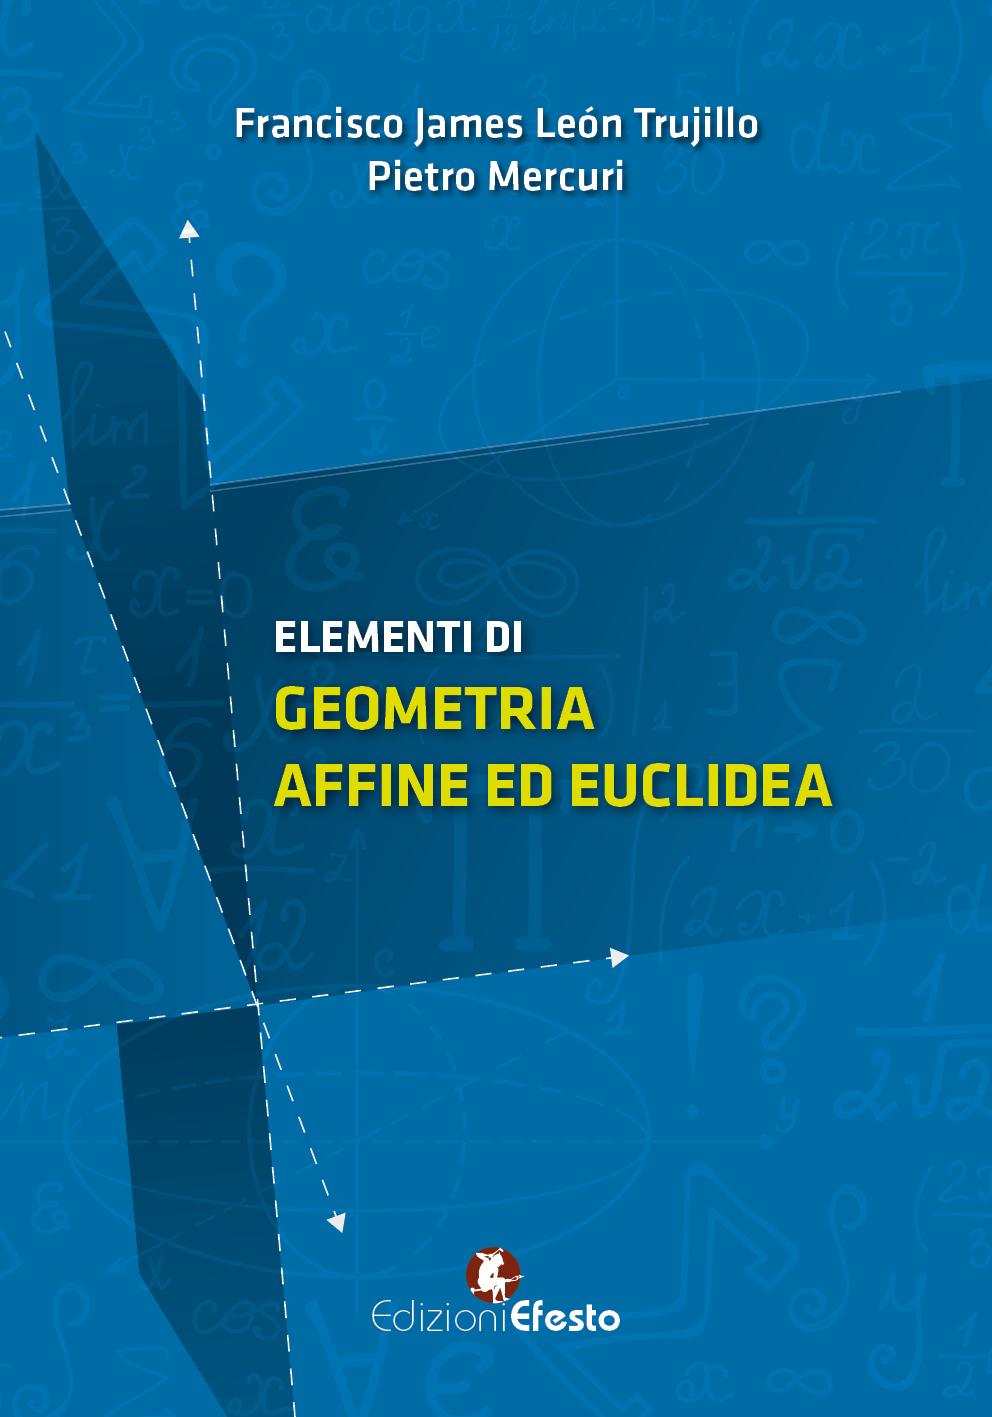 Copertina di Elementi di geometria affine ed euclidea 2°ediz.